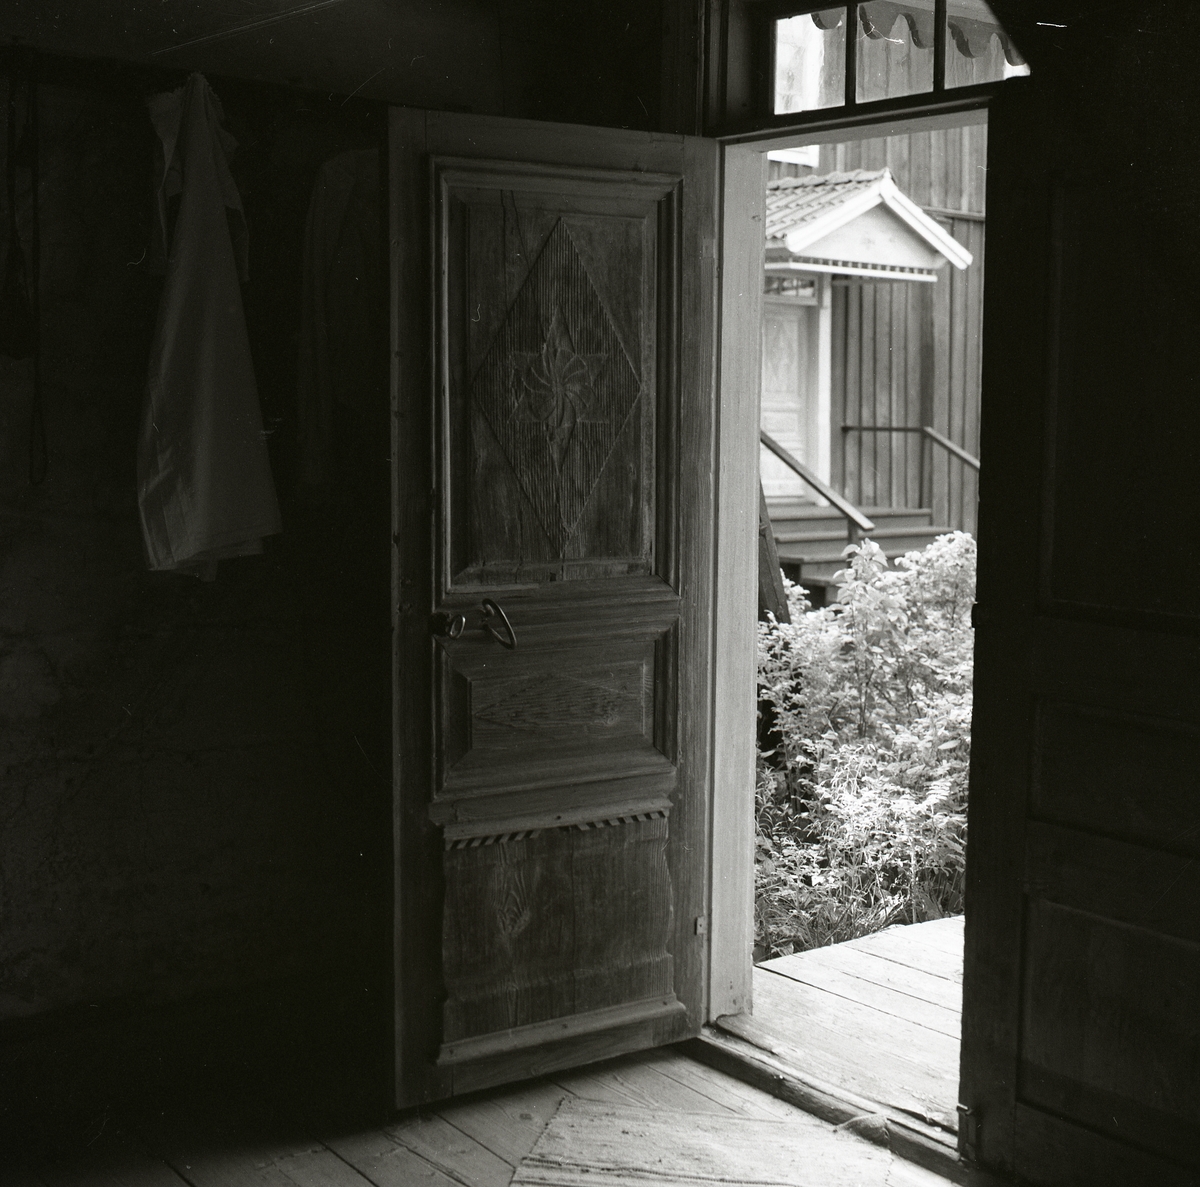 En trädörr med snidade dekorationer står öppen och utanför syns en förstukvist med snickarglädje, handtag, tröskel och överljusfönster. Innanför trädörren finns ett trägolv med en trasmatta och en jacka hänger bakom dörren, Hembygdsbyn 1 september 1981.